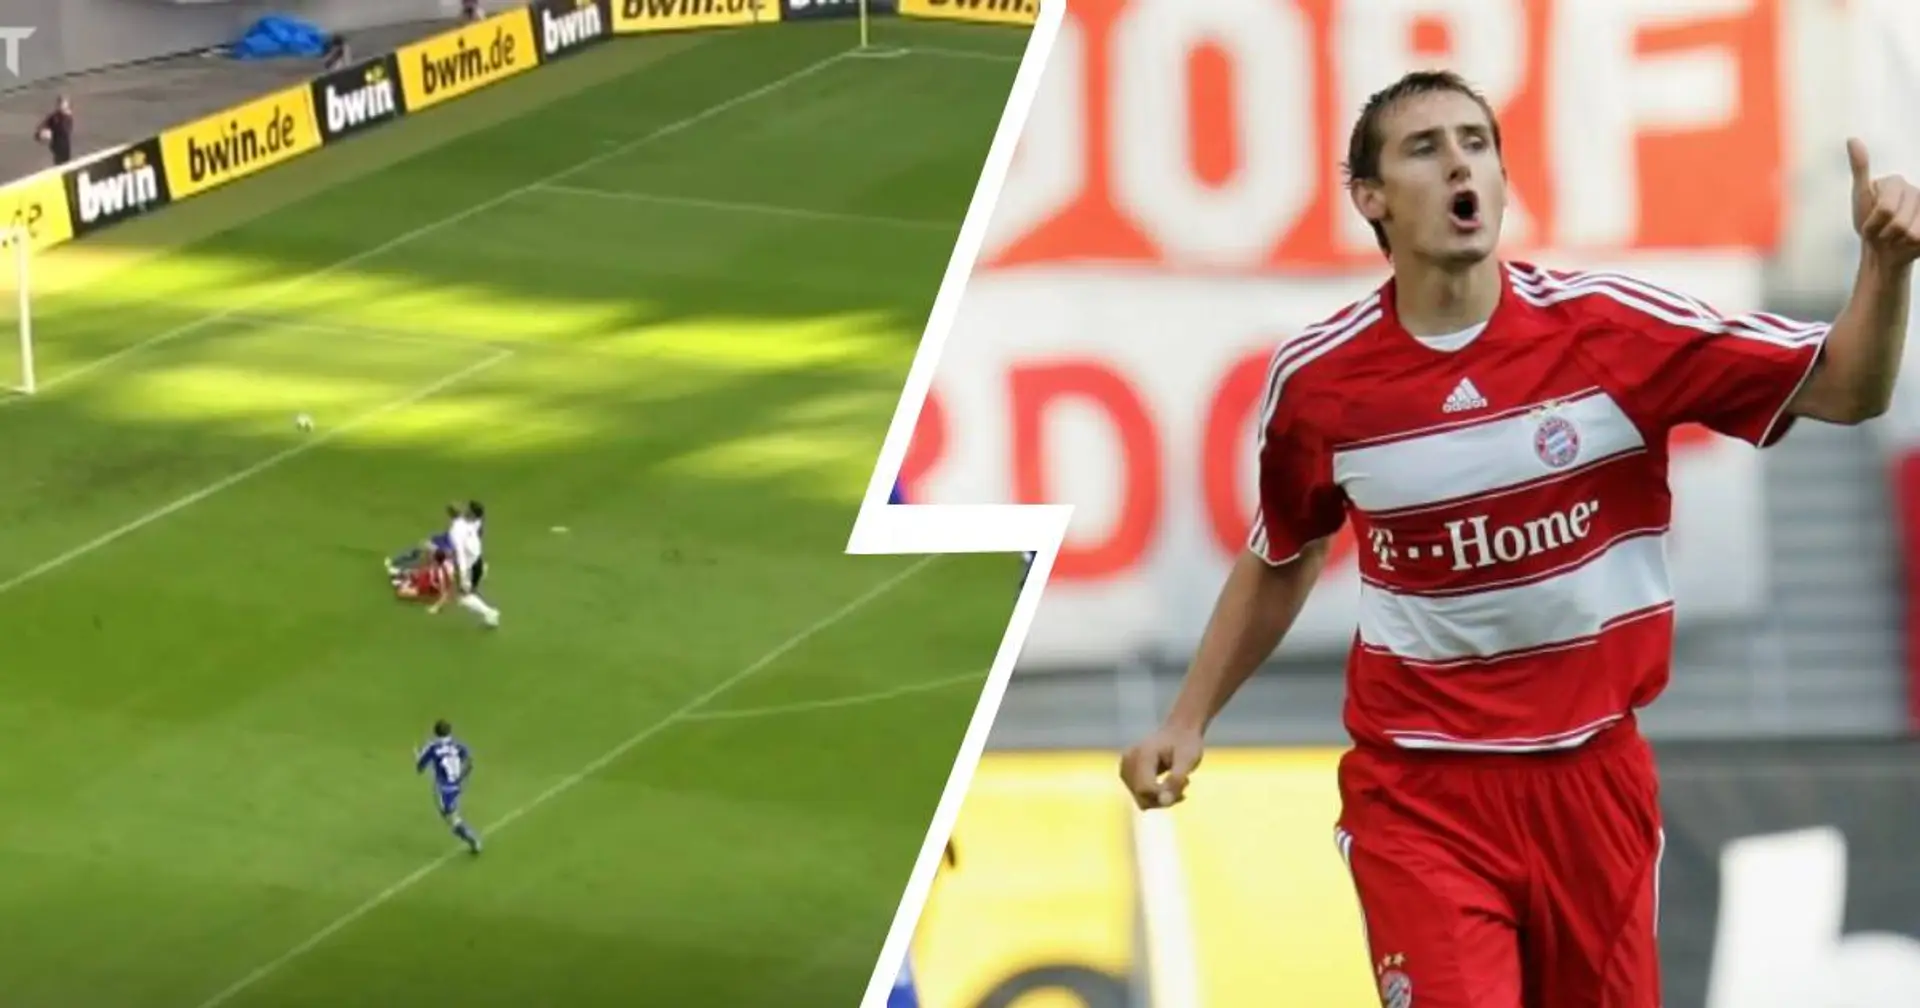 Debüt-Tore: Miro Klose erzielt seinen ersten Treffer im Bayern-Trikot gegen Schalke